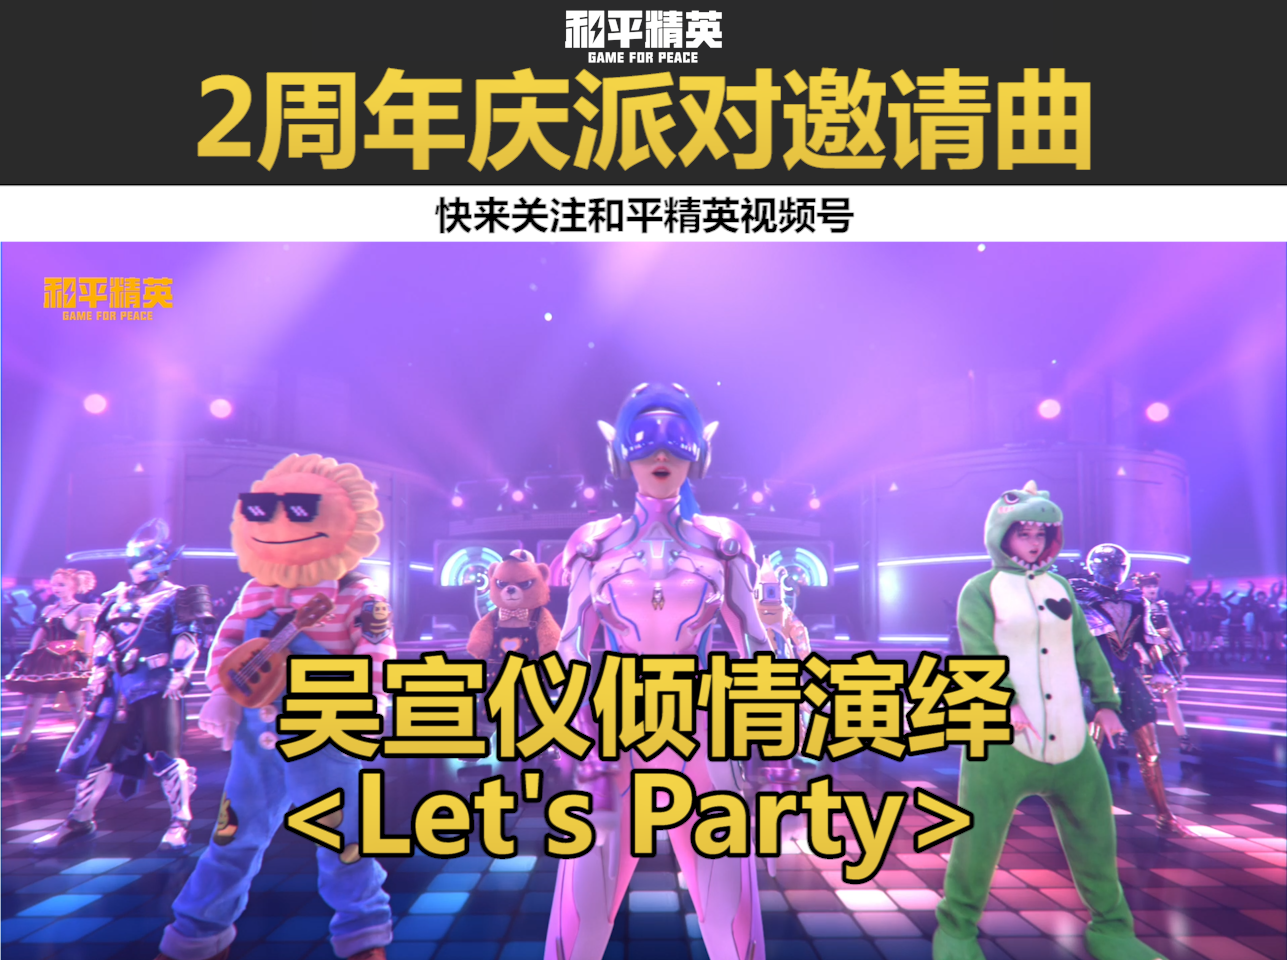 和平精英2周年庆派对邀请曲《Let's Party》MV